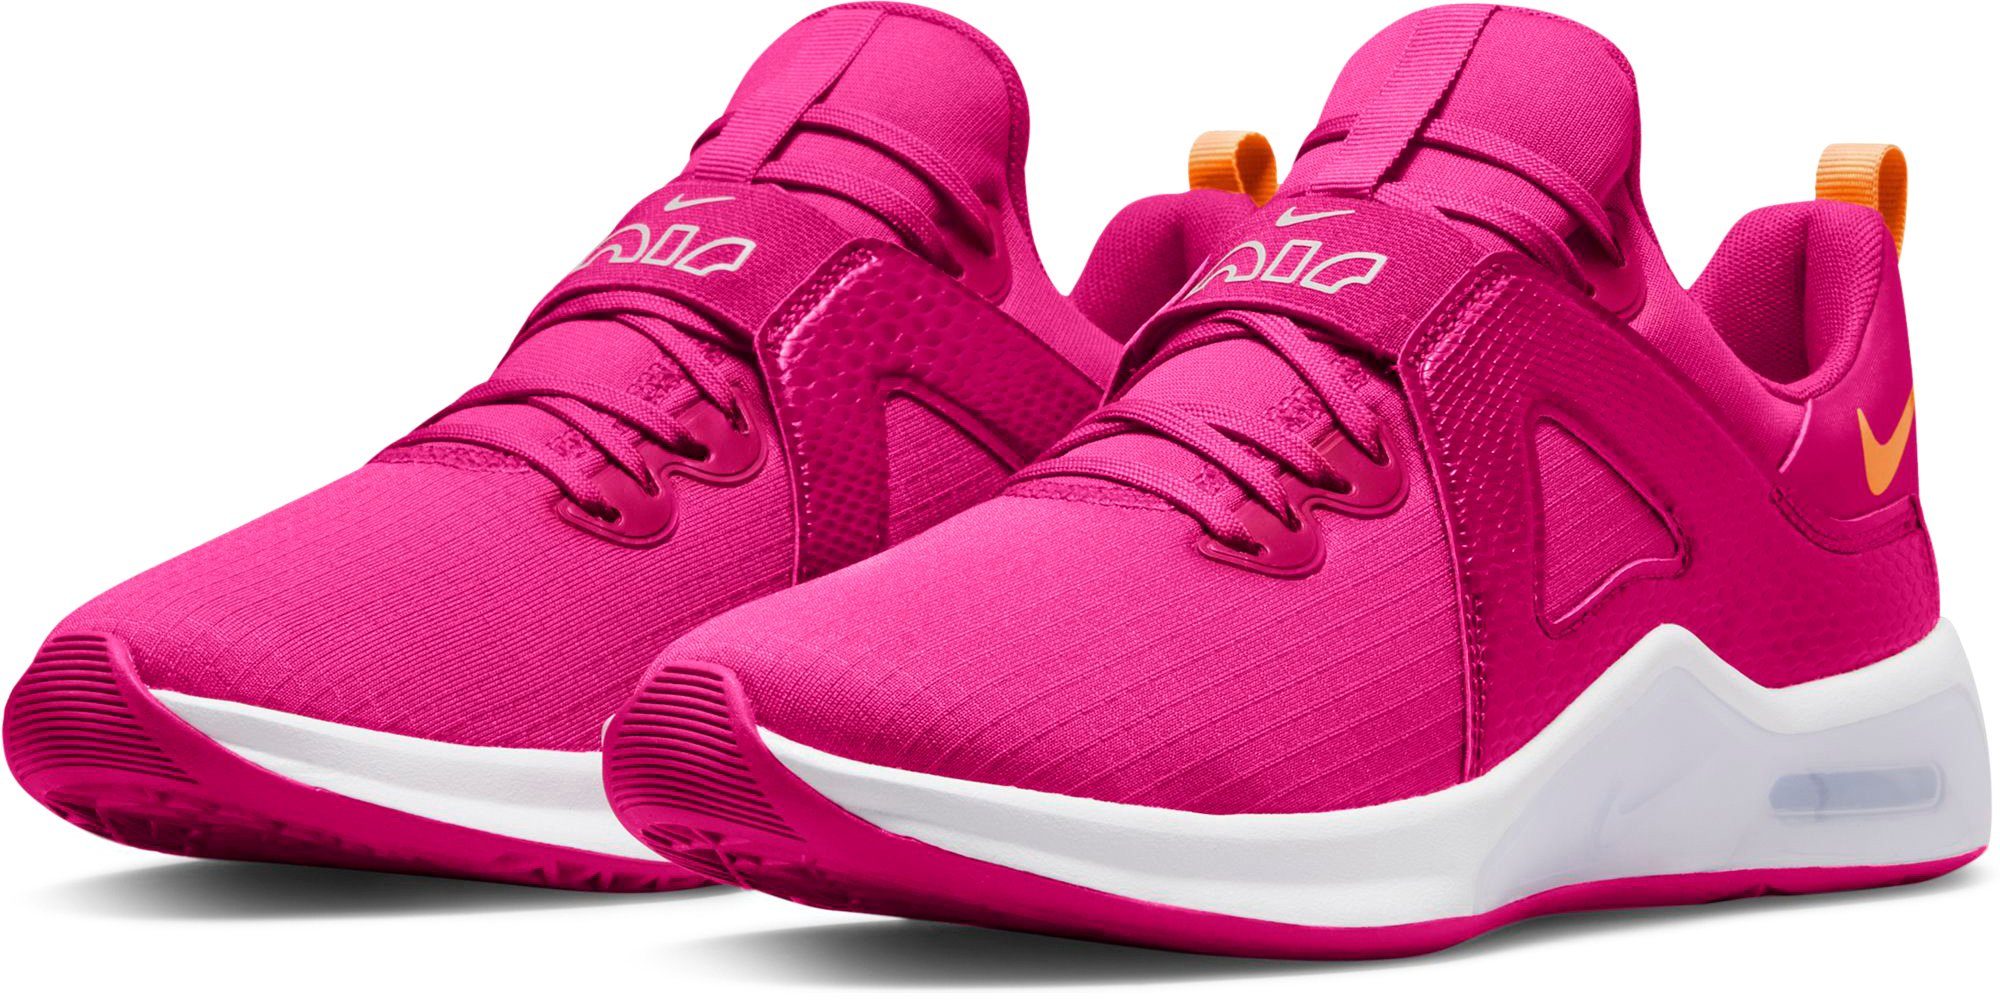 Nike Damenschuhe online kaufen | OTTO